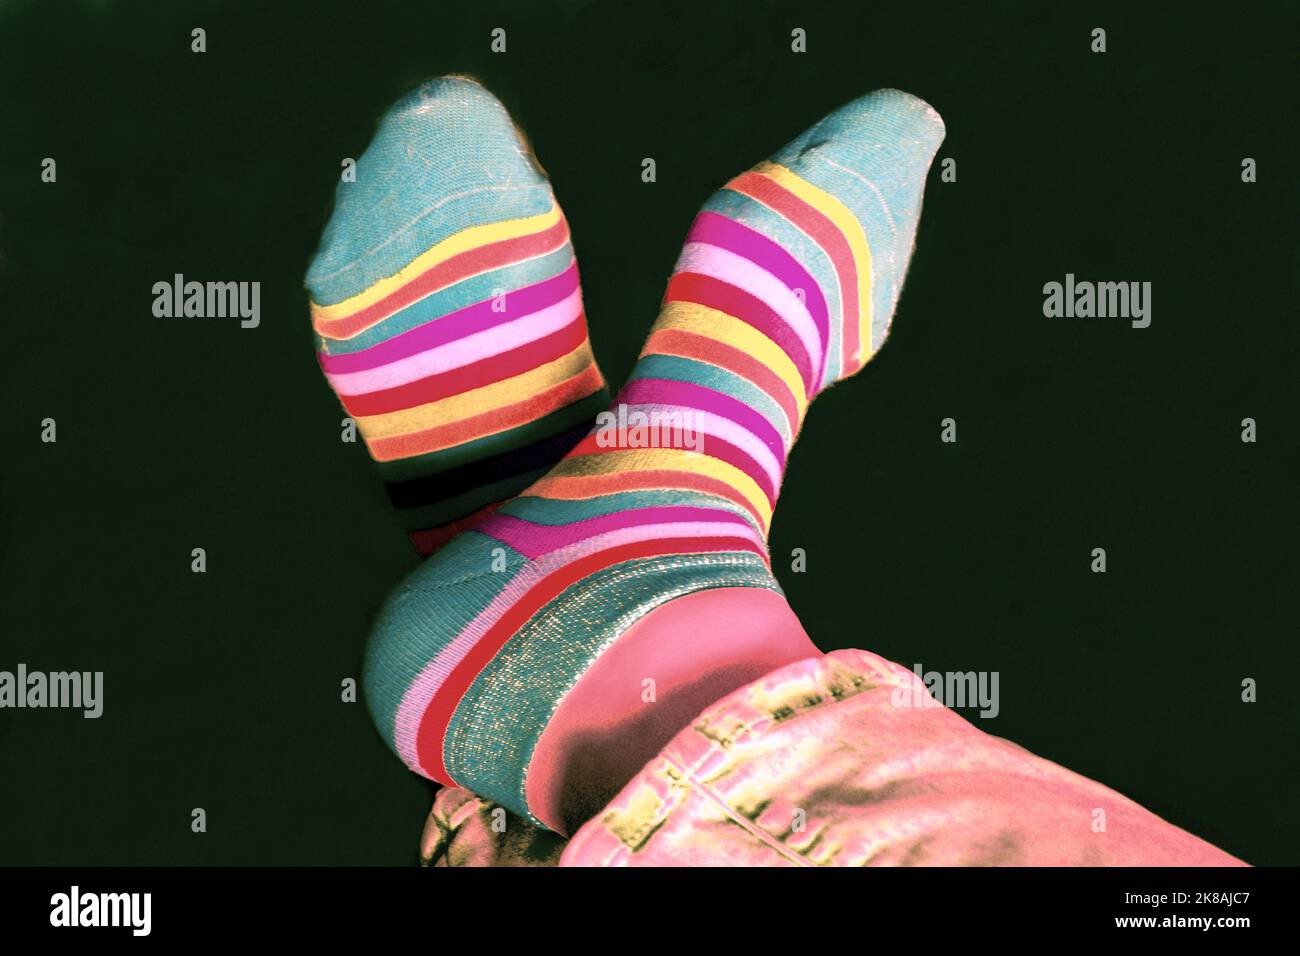 Füße in bunten Socken - Sneaker Stock Photo